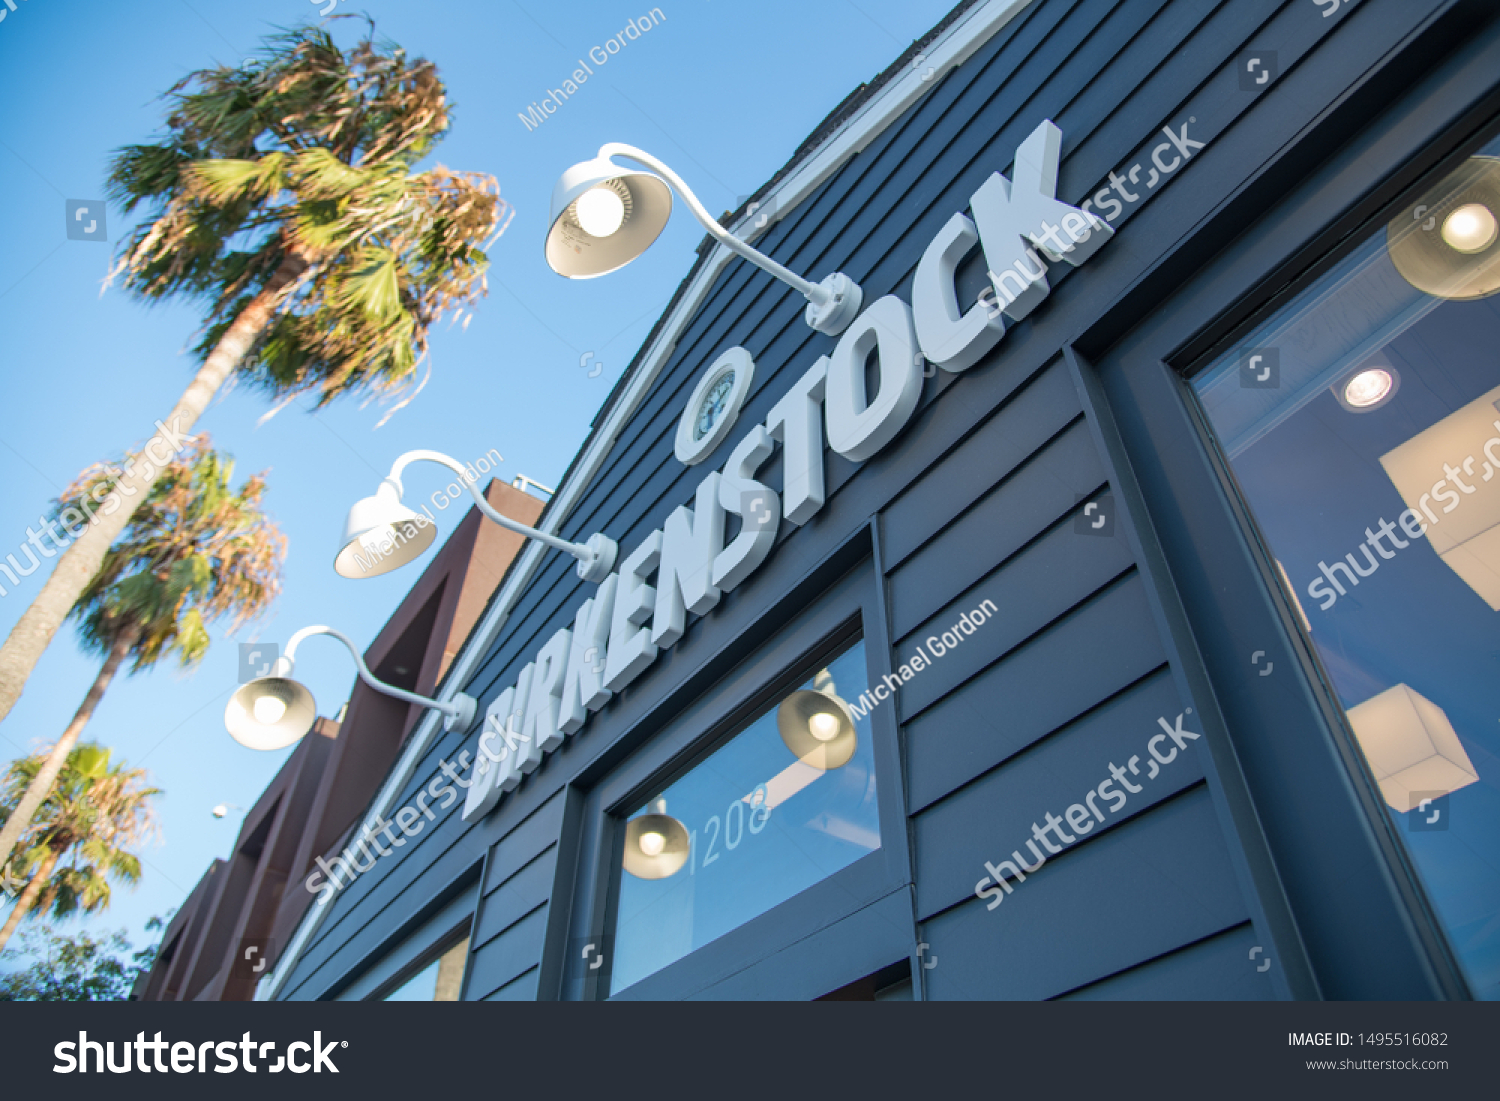 birkenstock retail store near me